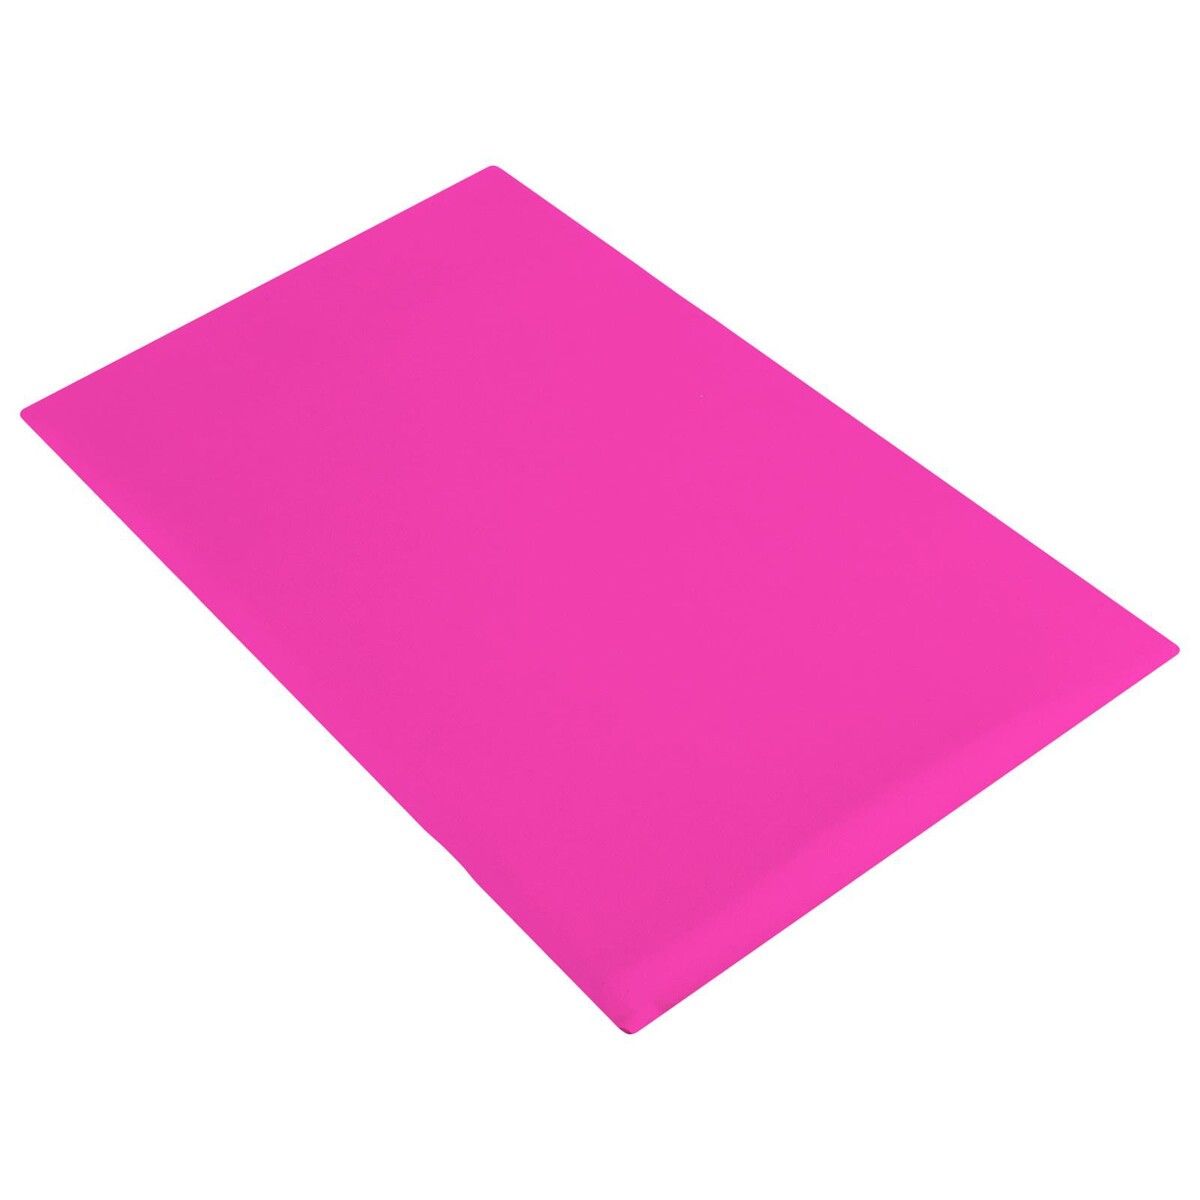 фото Подушка гимнастическая для растяжки grace dance, 38х25 см, цвет розовый